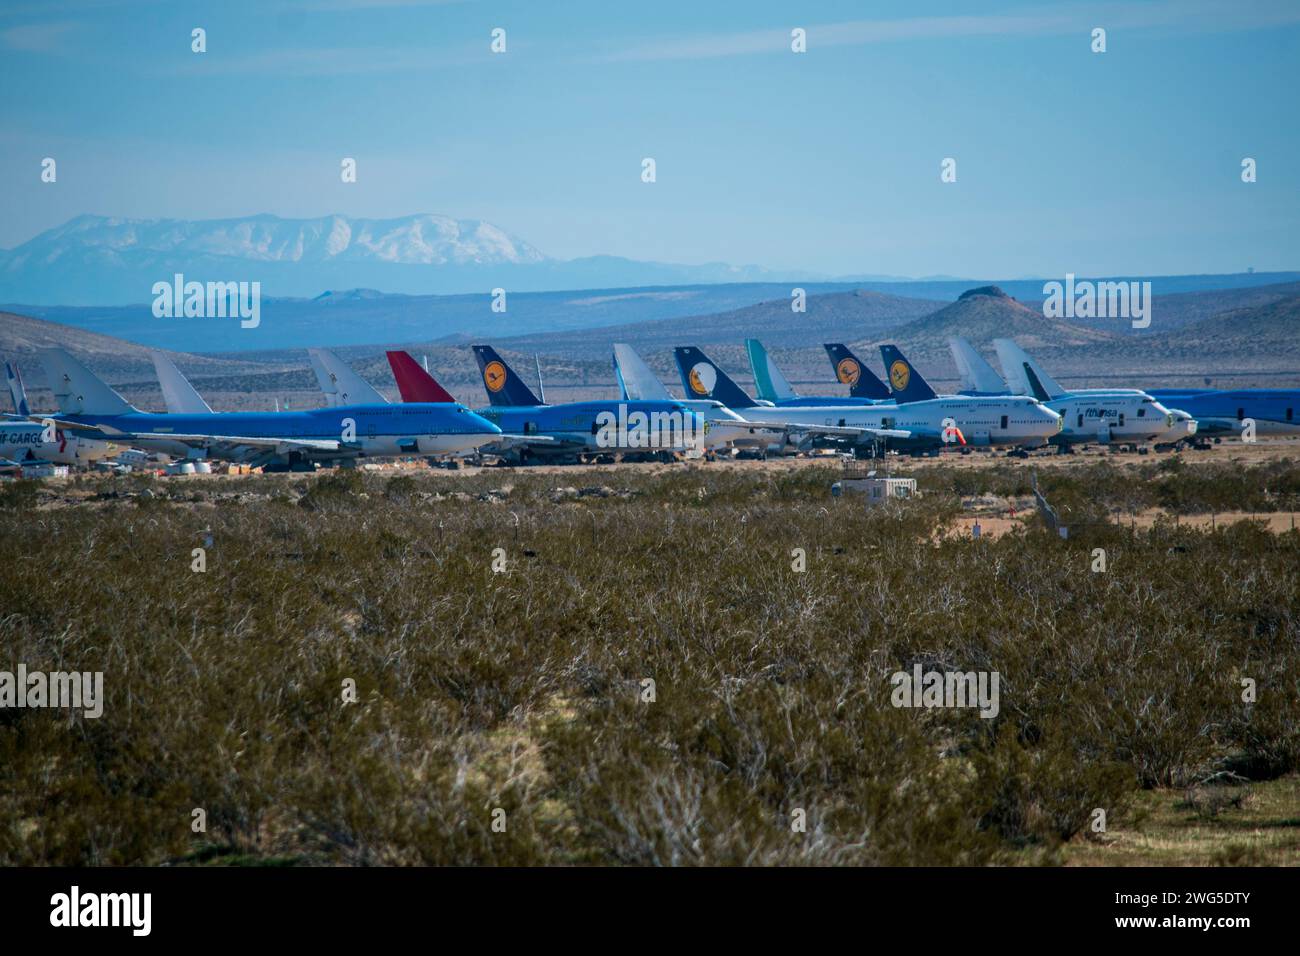 Ce cimetière d'avions se trouve près de la ville de Mojave dans le désert de Mojave en Californie. Banque D'Images